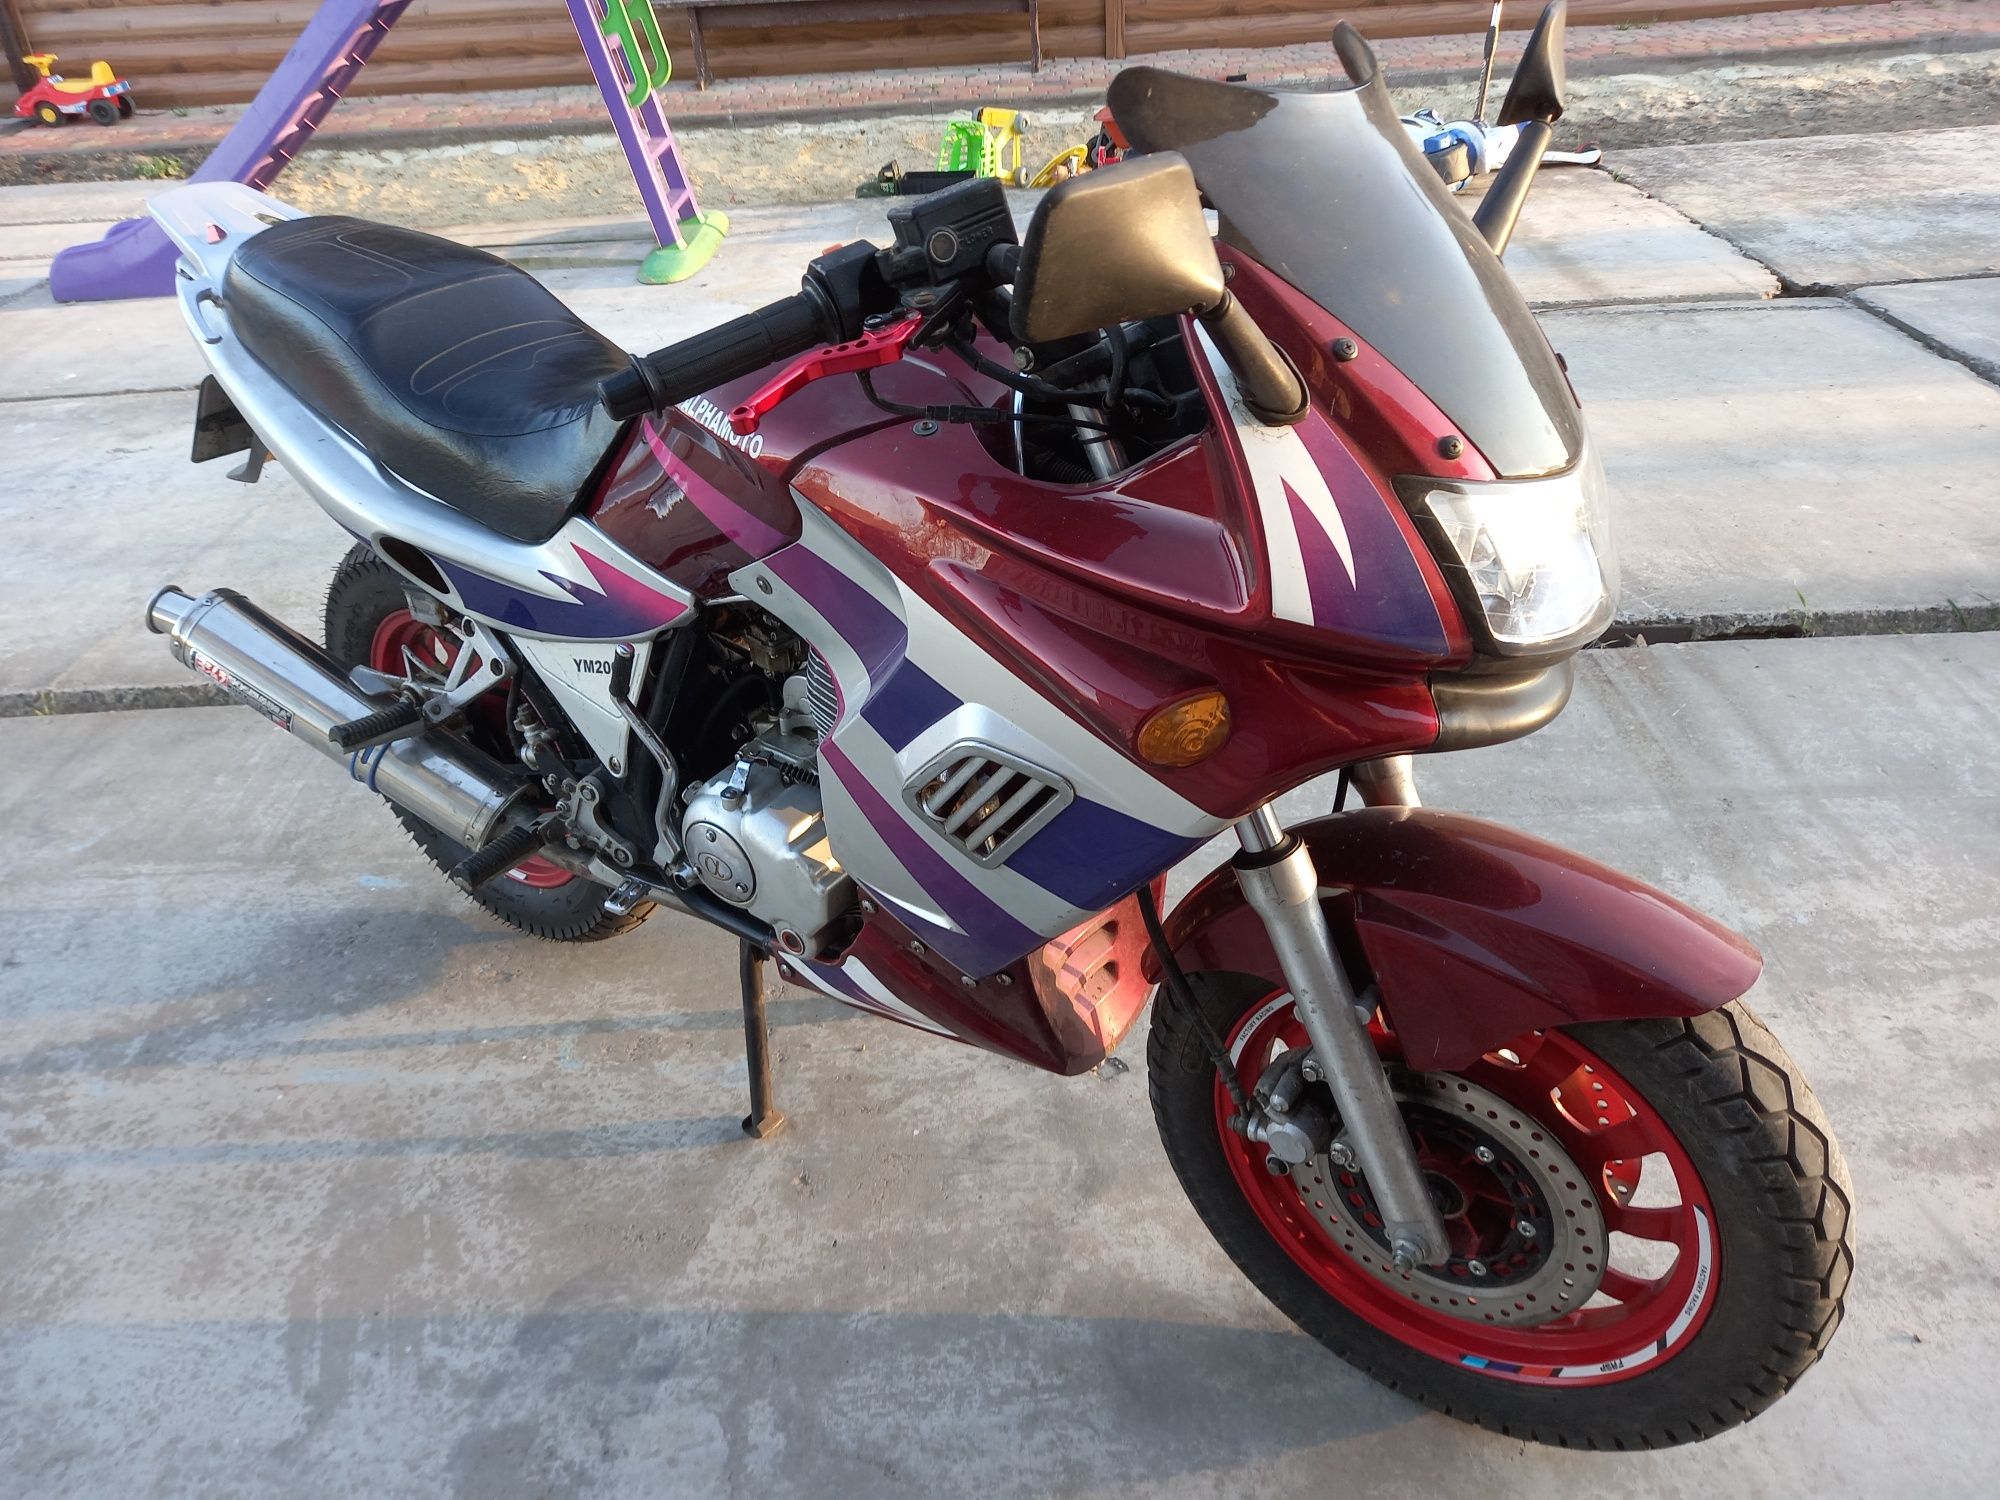 Продам мотоцикл YAMASAKI YM 200